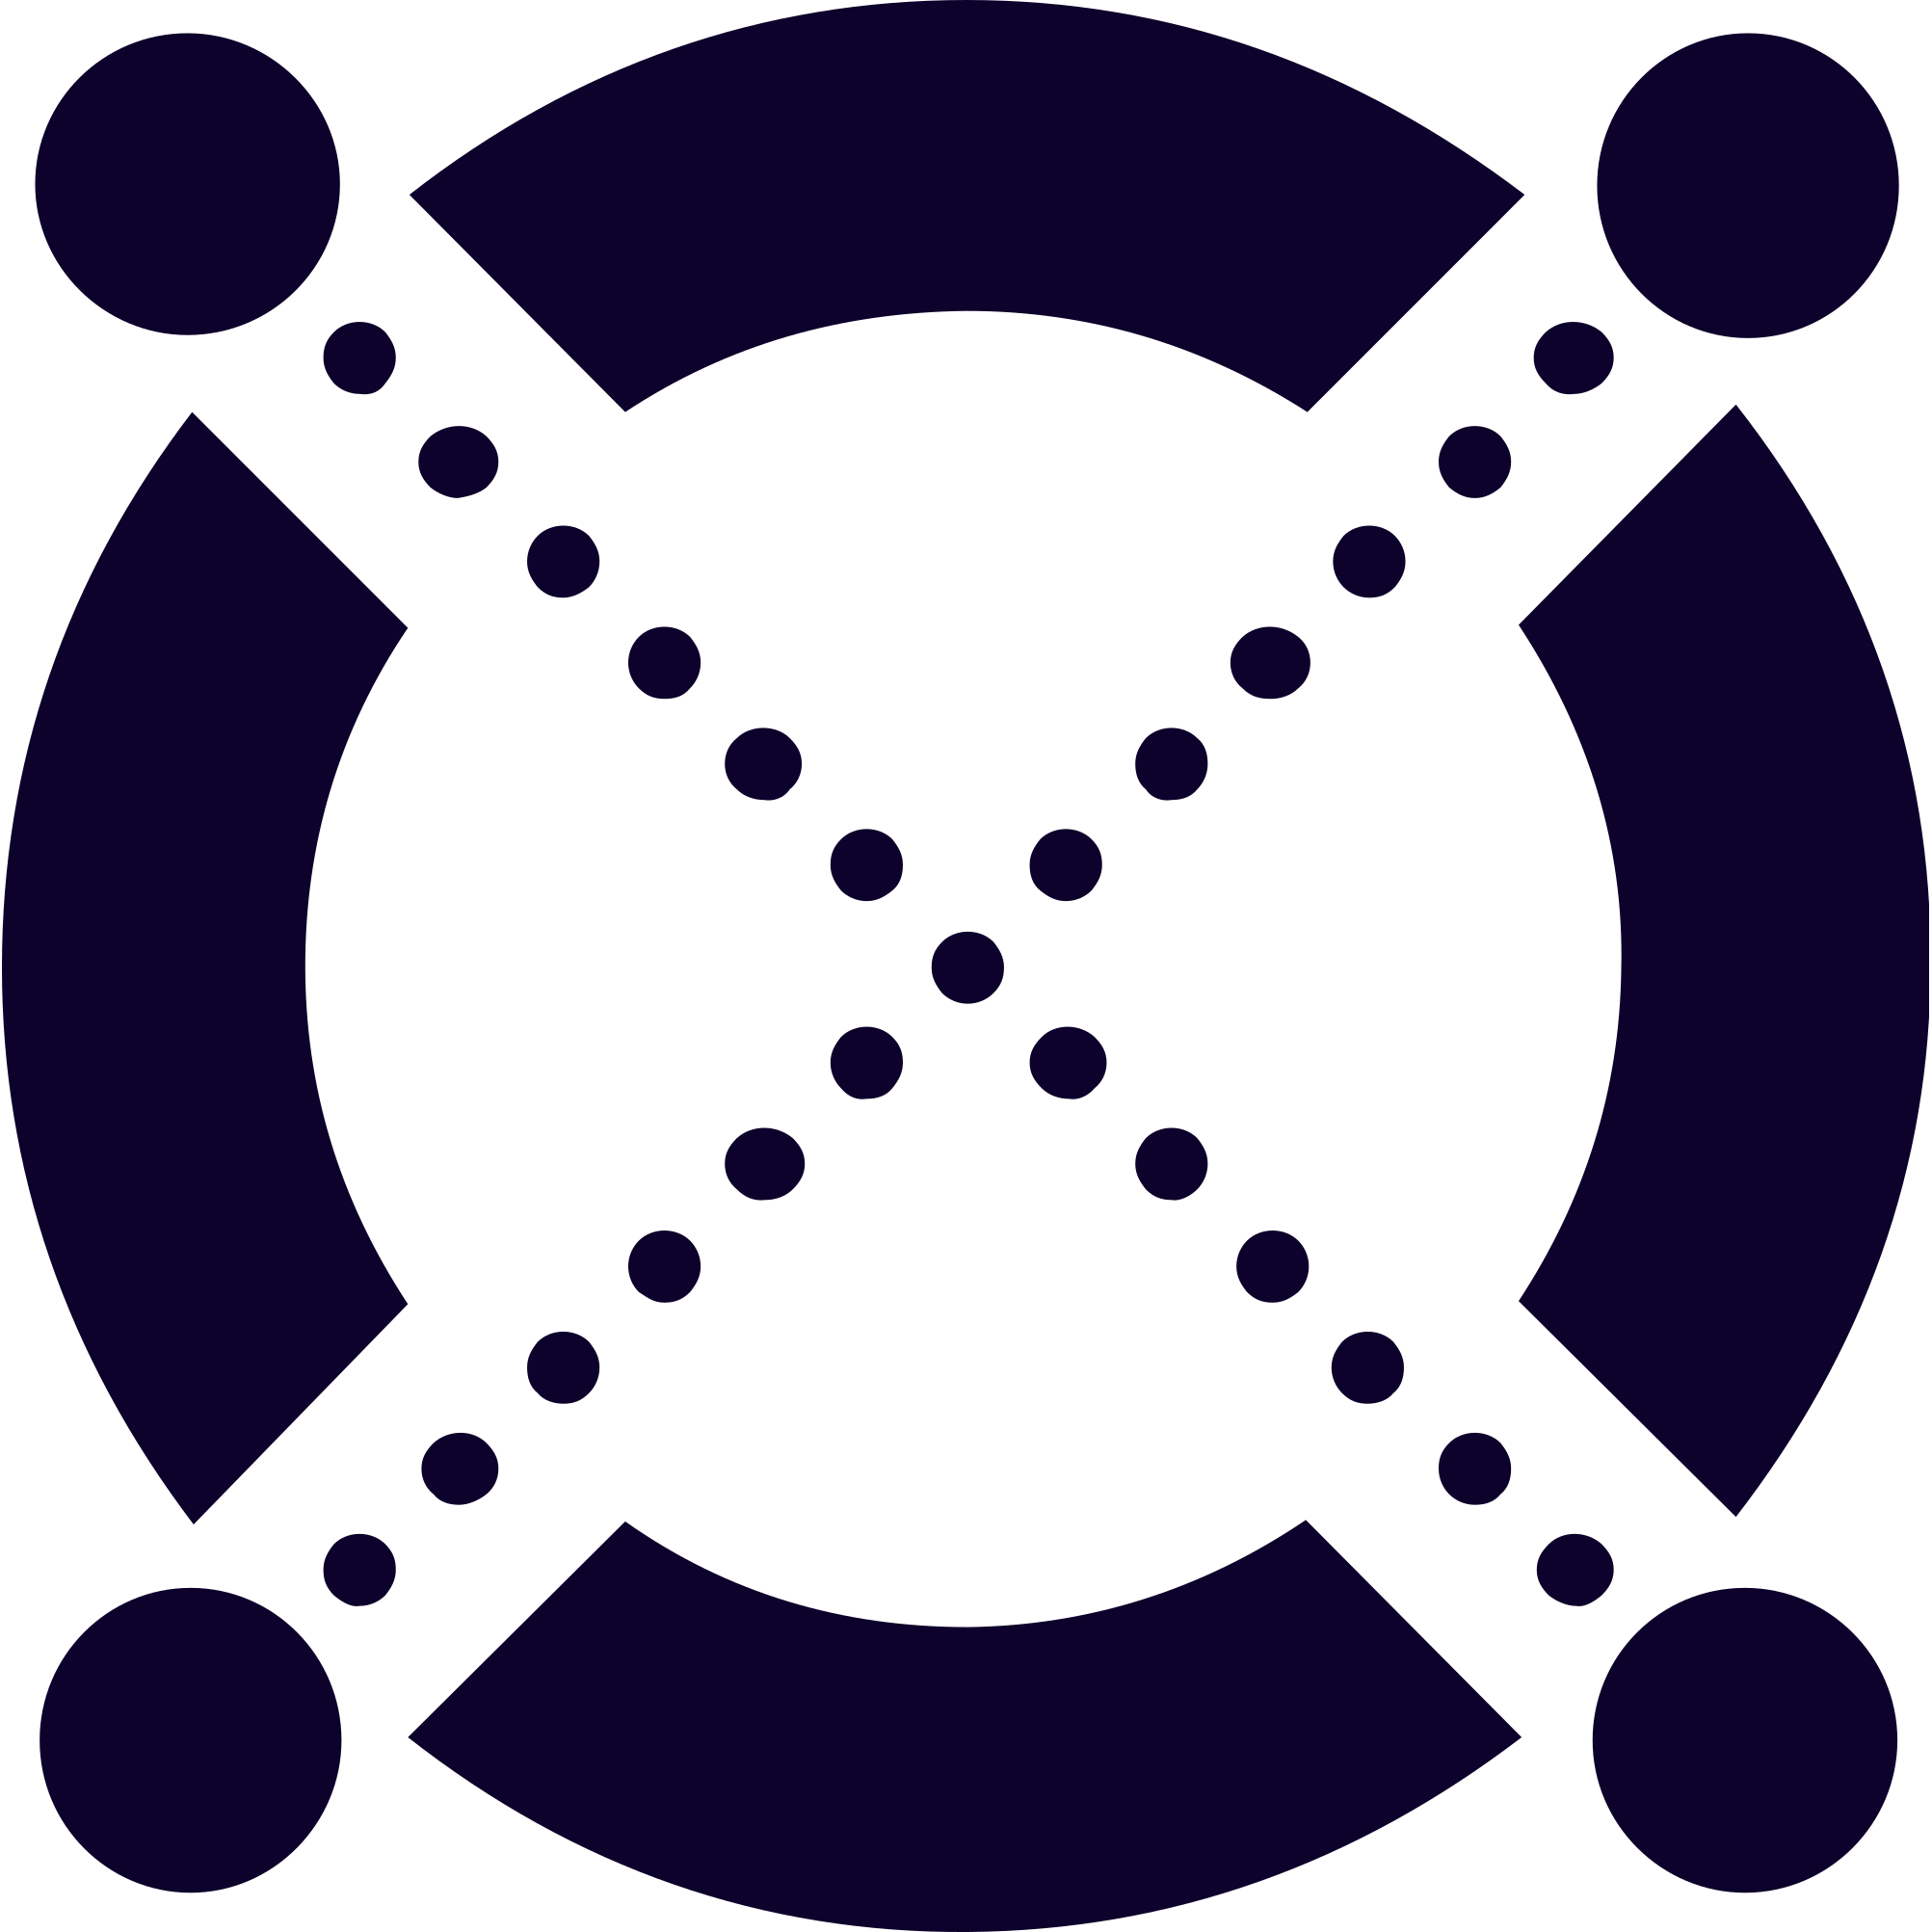 elrond-egld-egld-logo